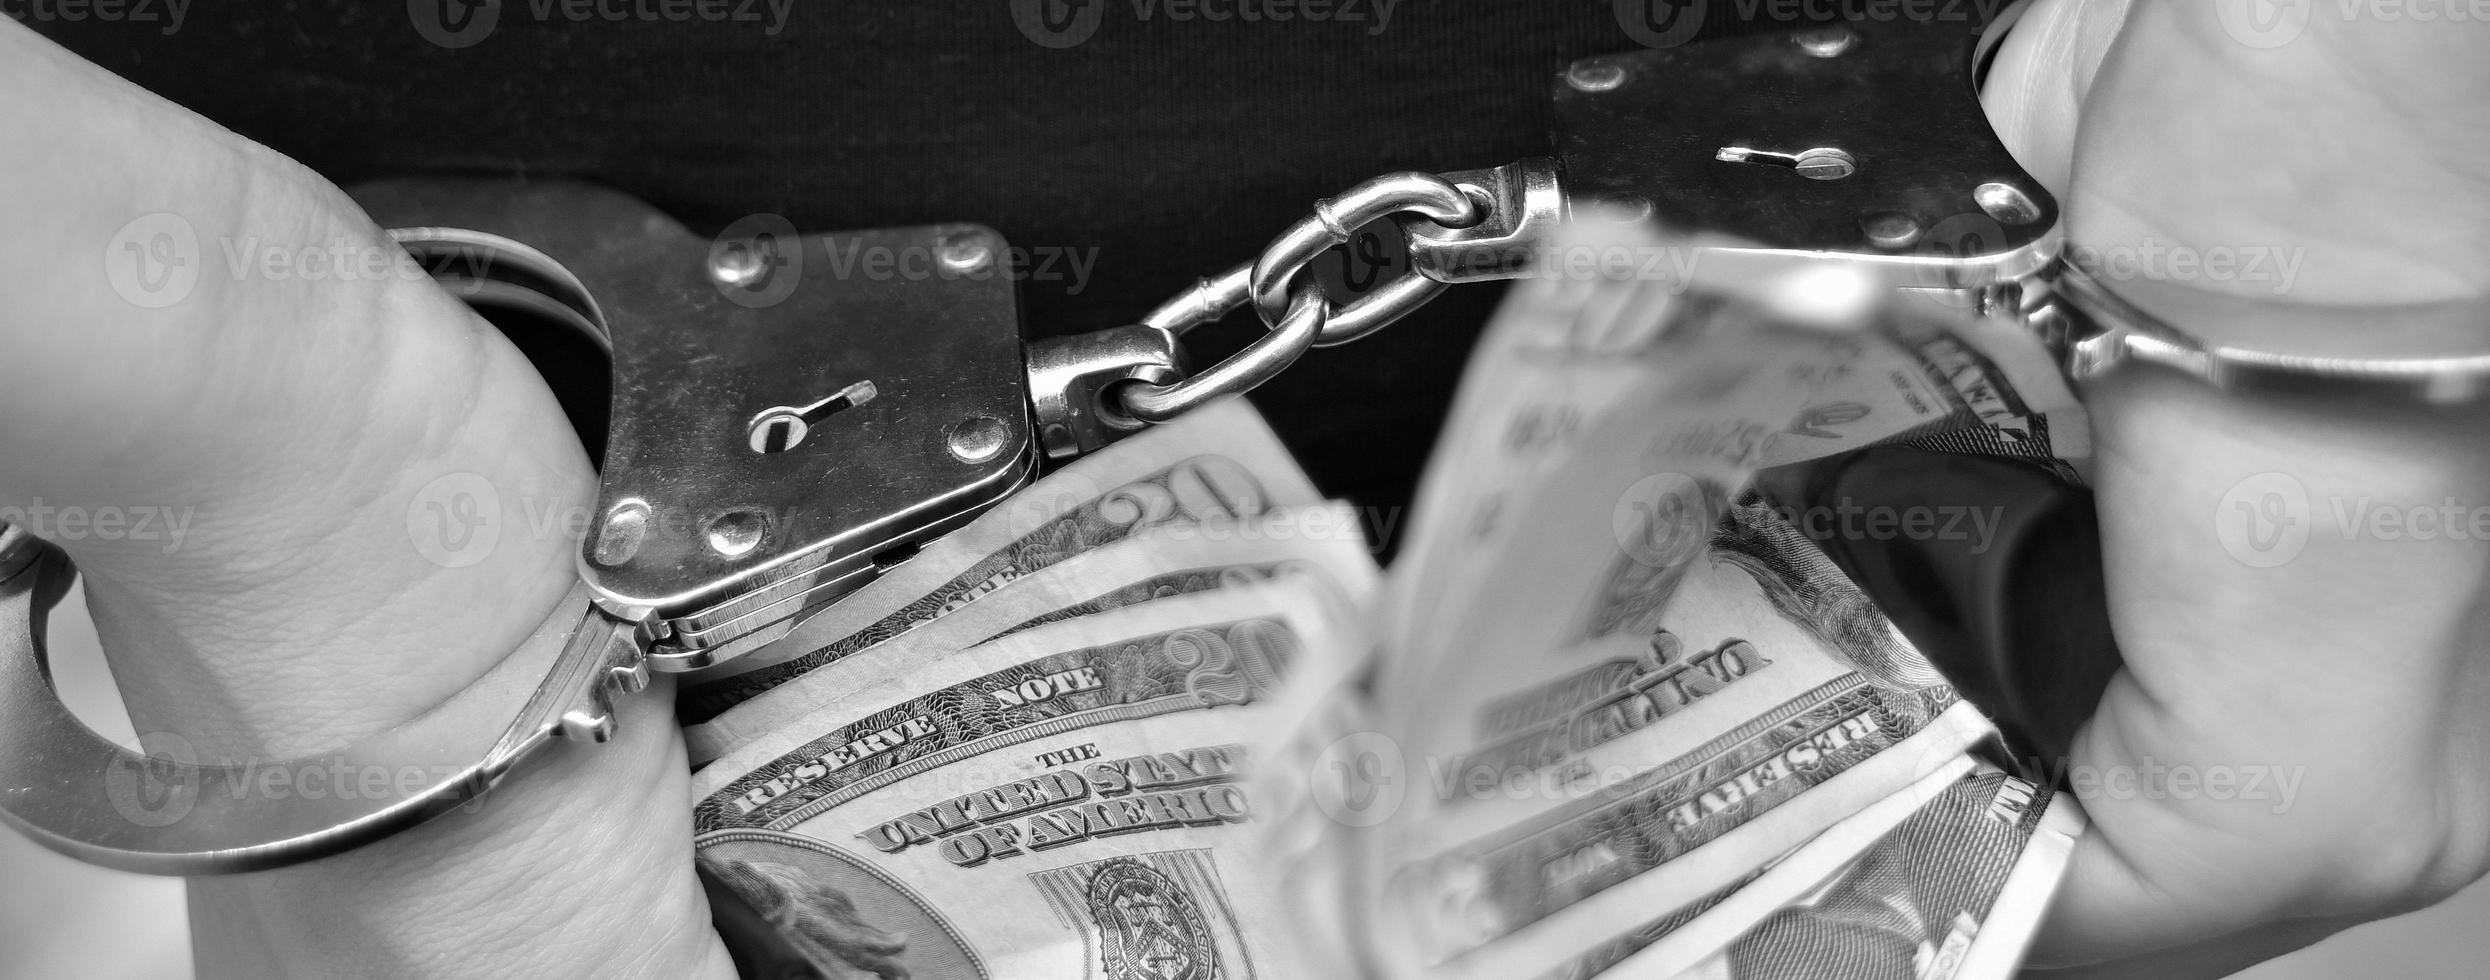 homem algemado segurando dinheiro de suborno em fundo escuro, closeup foto